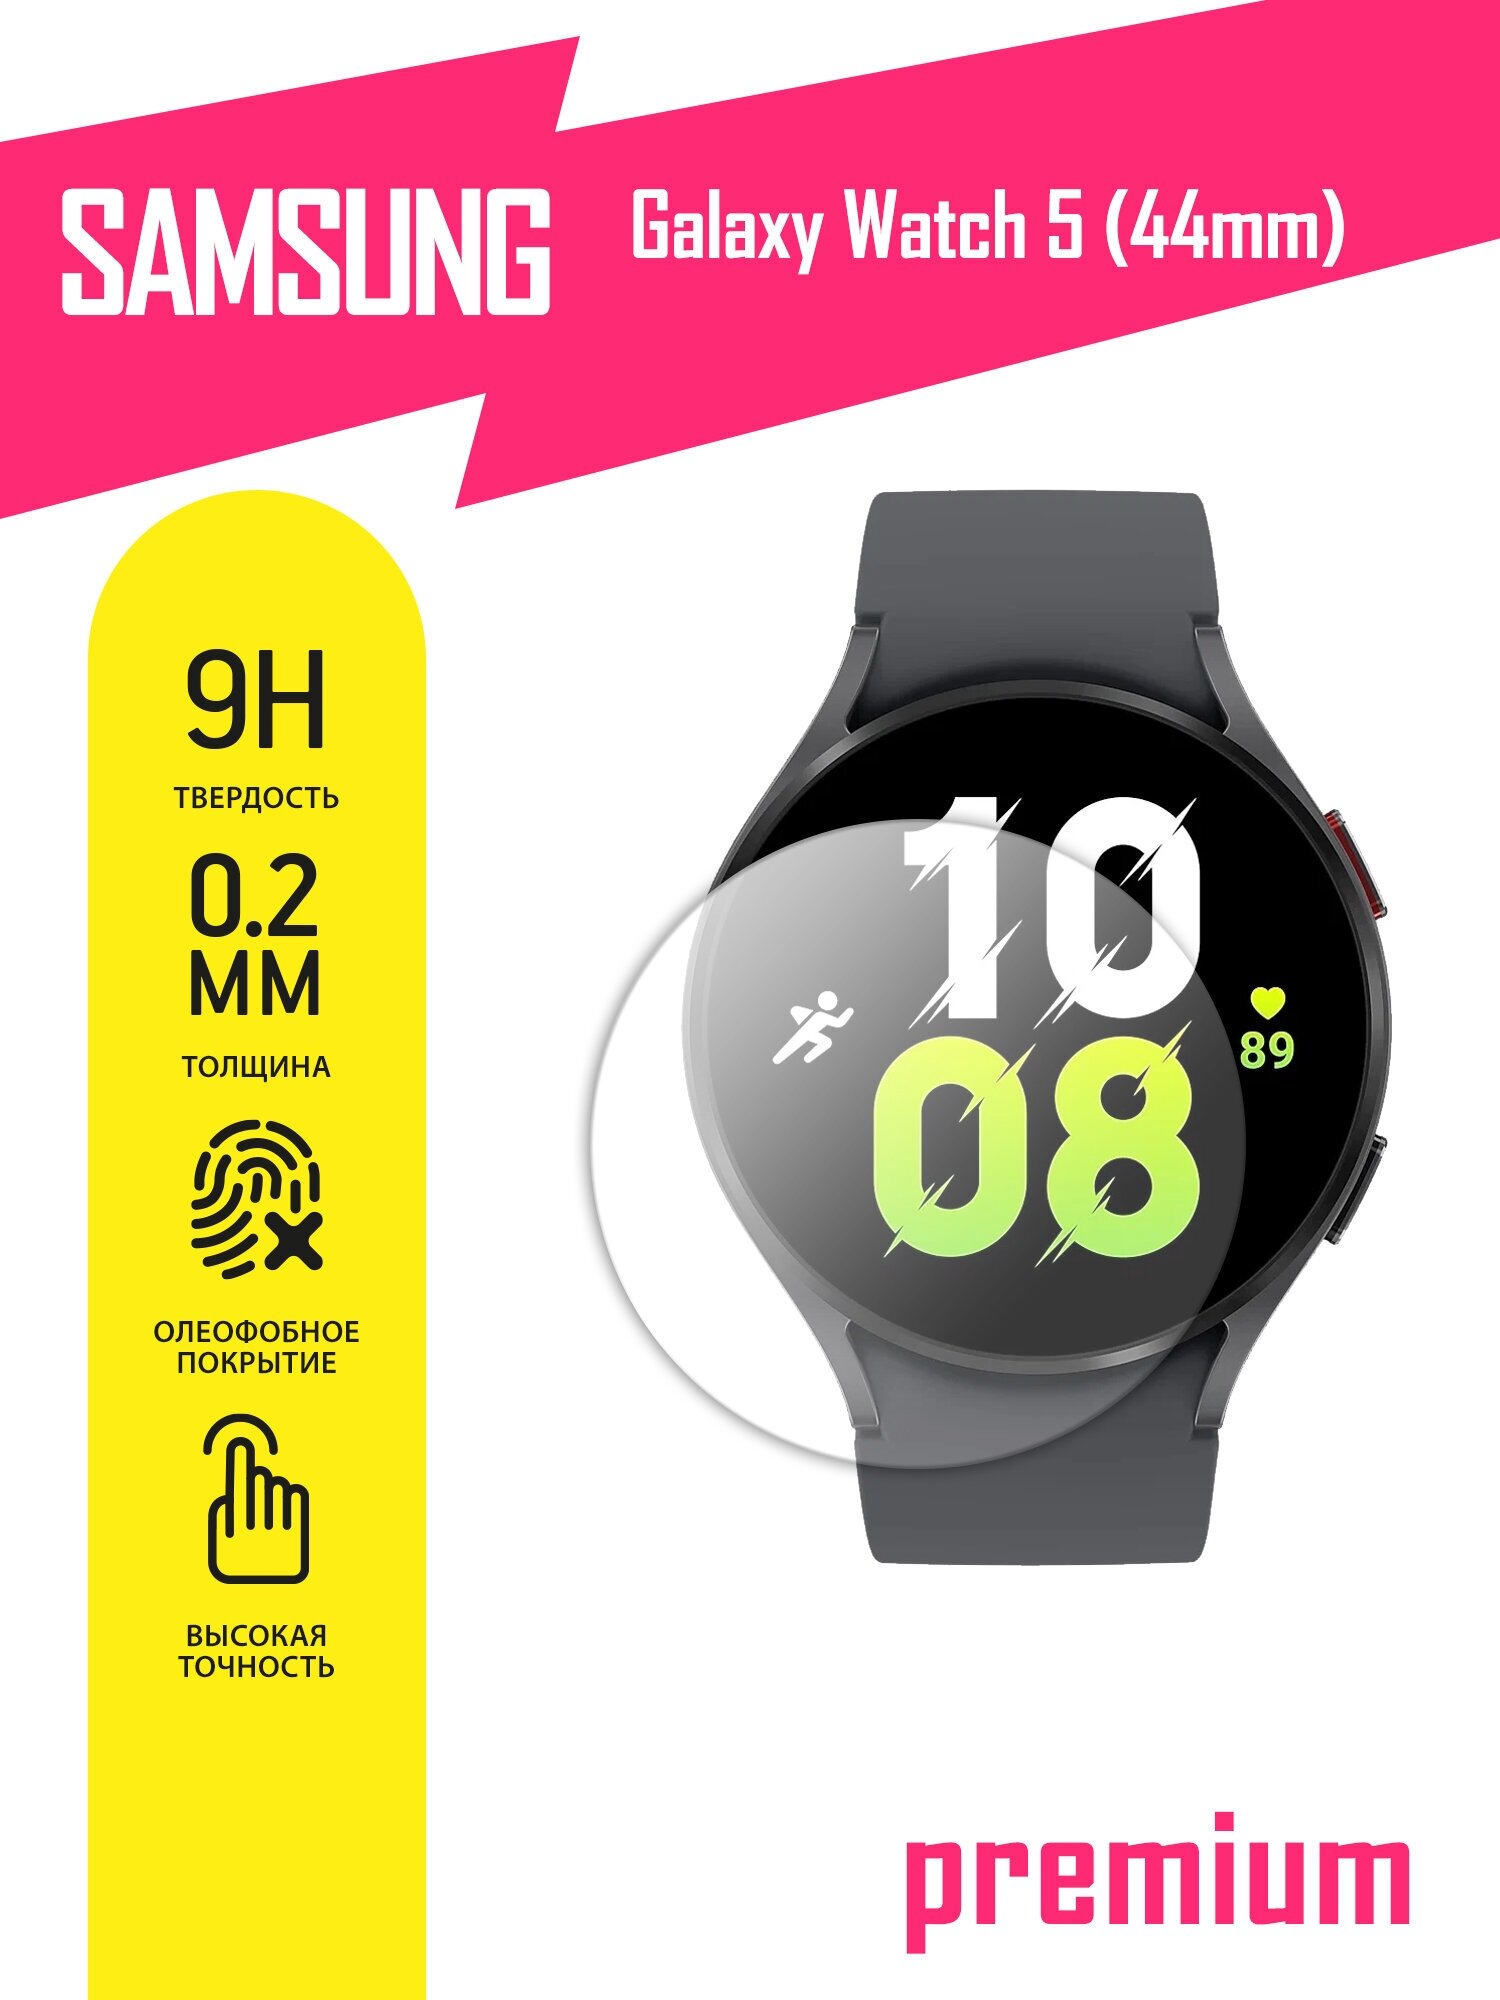 Защитное стекло для Samsung Galaxy Watch 5 44mm Самсунг Галакси Вотч 5 44 мм Гелакси гибридное (гибкое стекло) на экран AKSPro